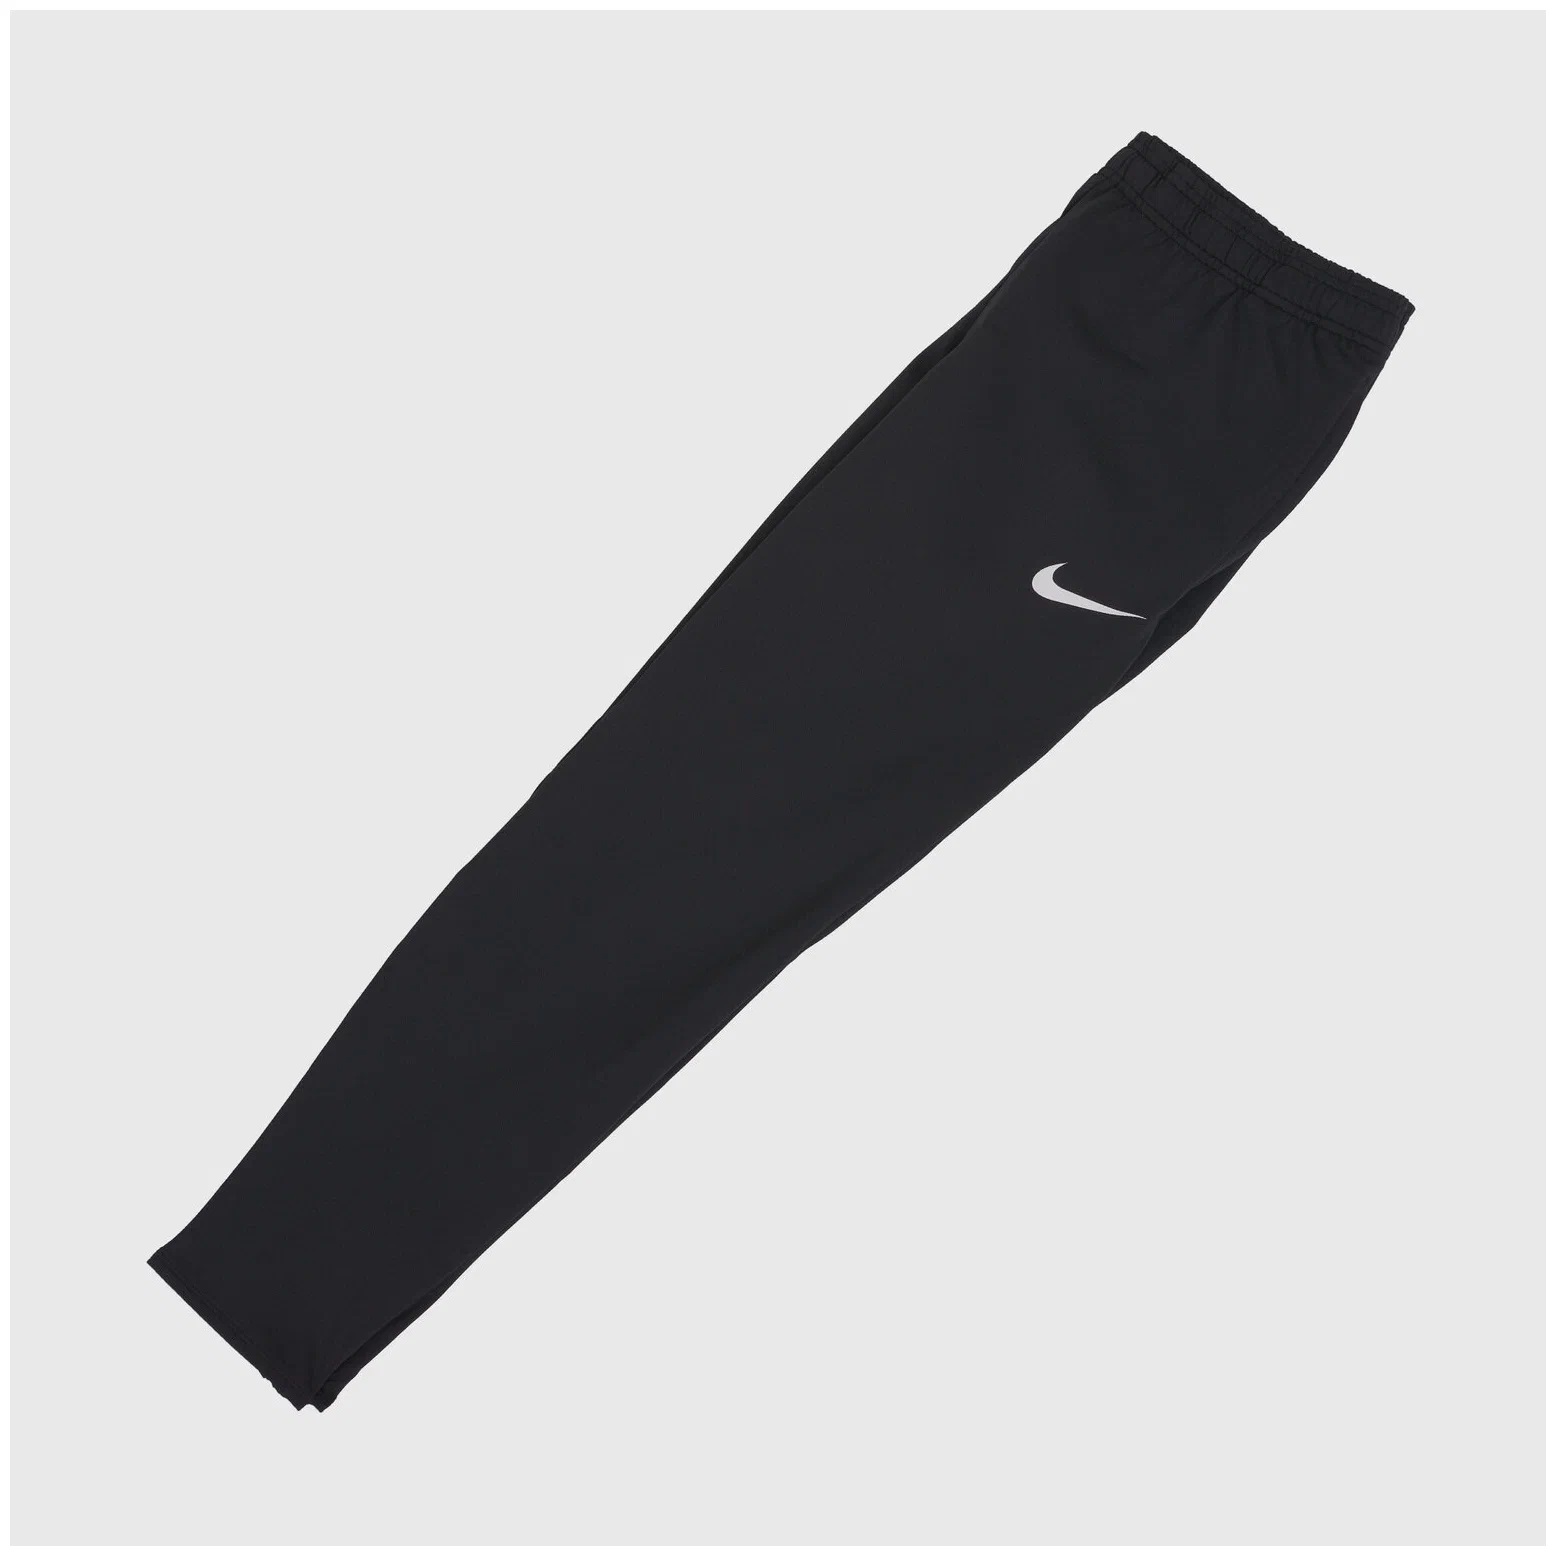 Брюки Nike F. C. Essential Pant черные